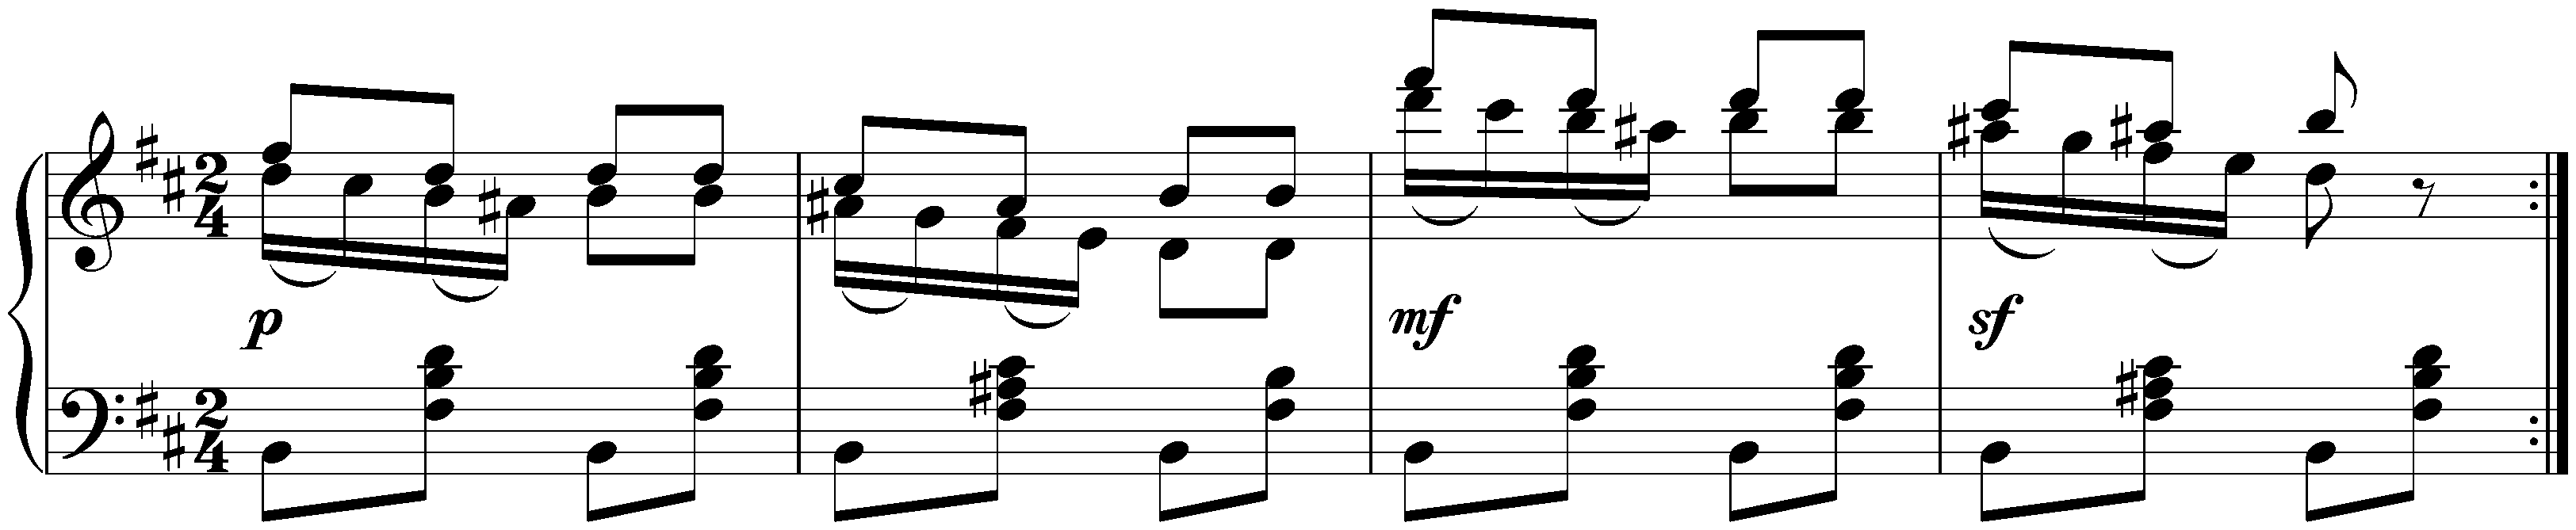 Twelve Waltzes, seventeen Ländler and nine Ecossaises, D 145; 37. Nine Ecossaises, no. 8 in B minor